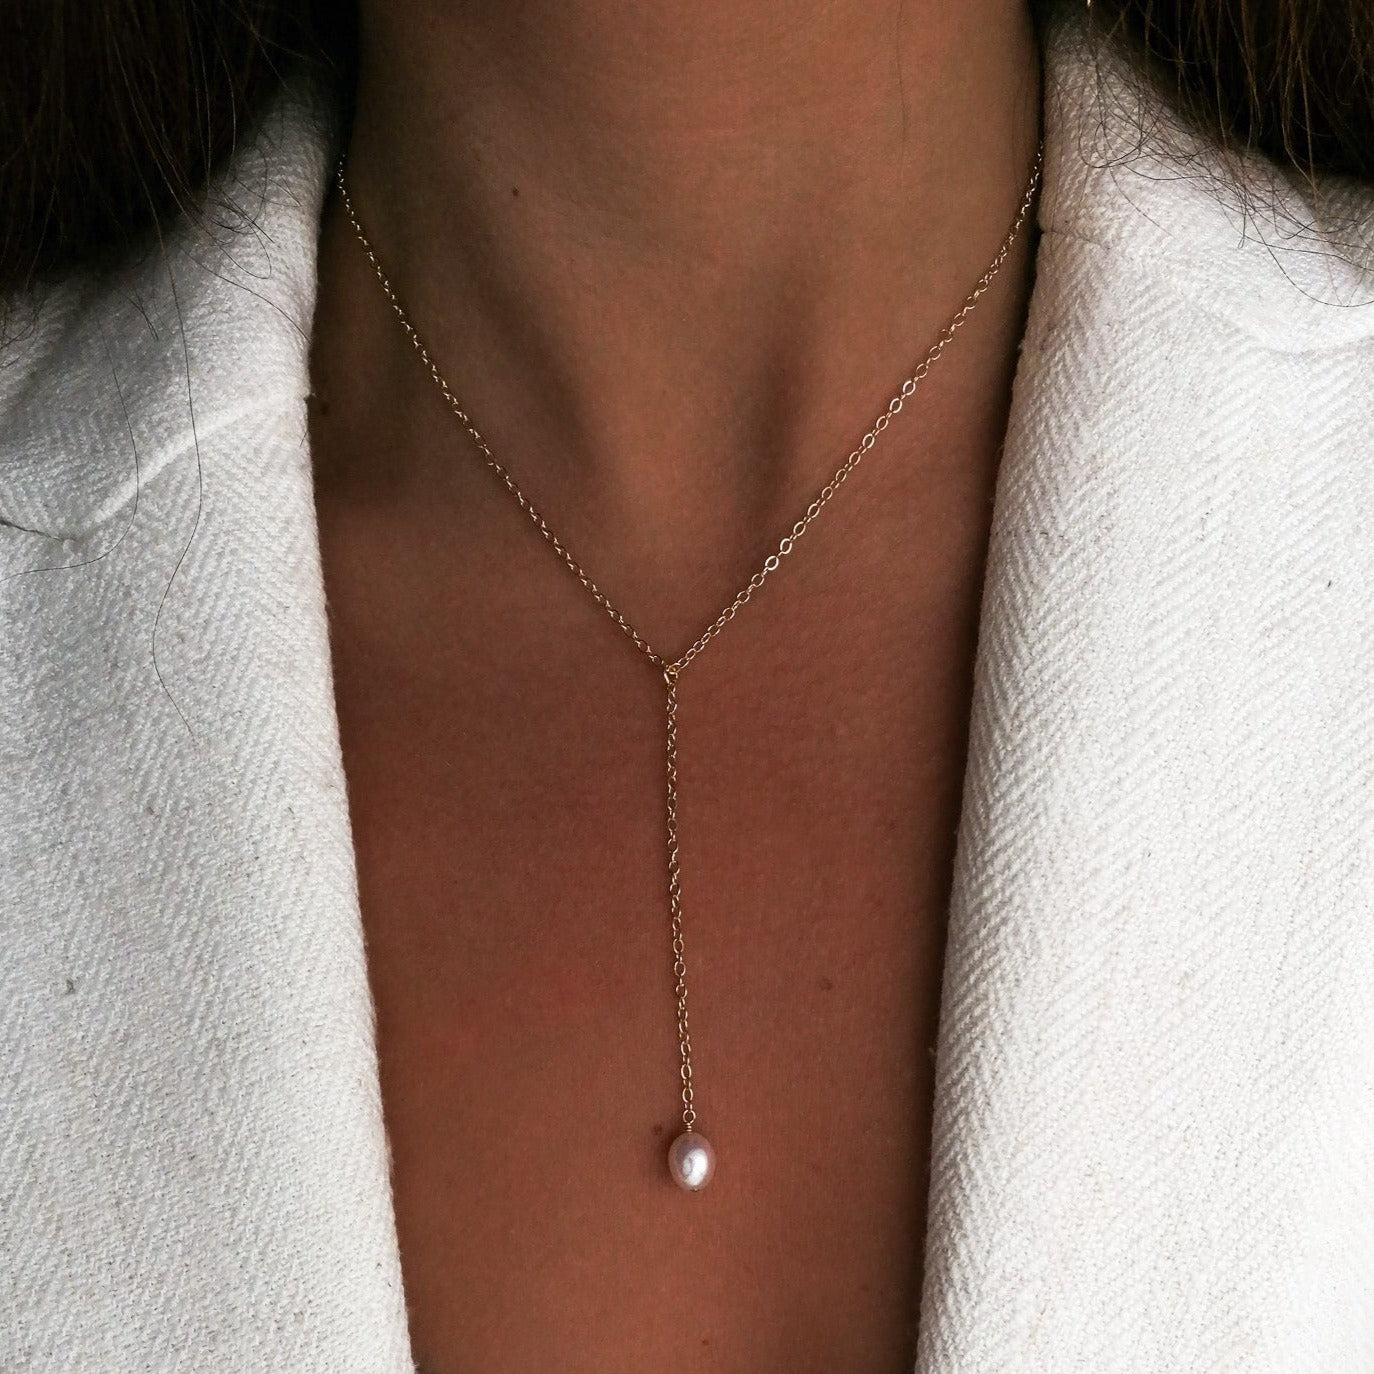 Verona necklace